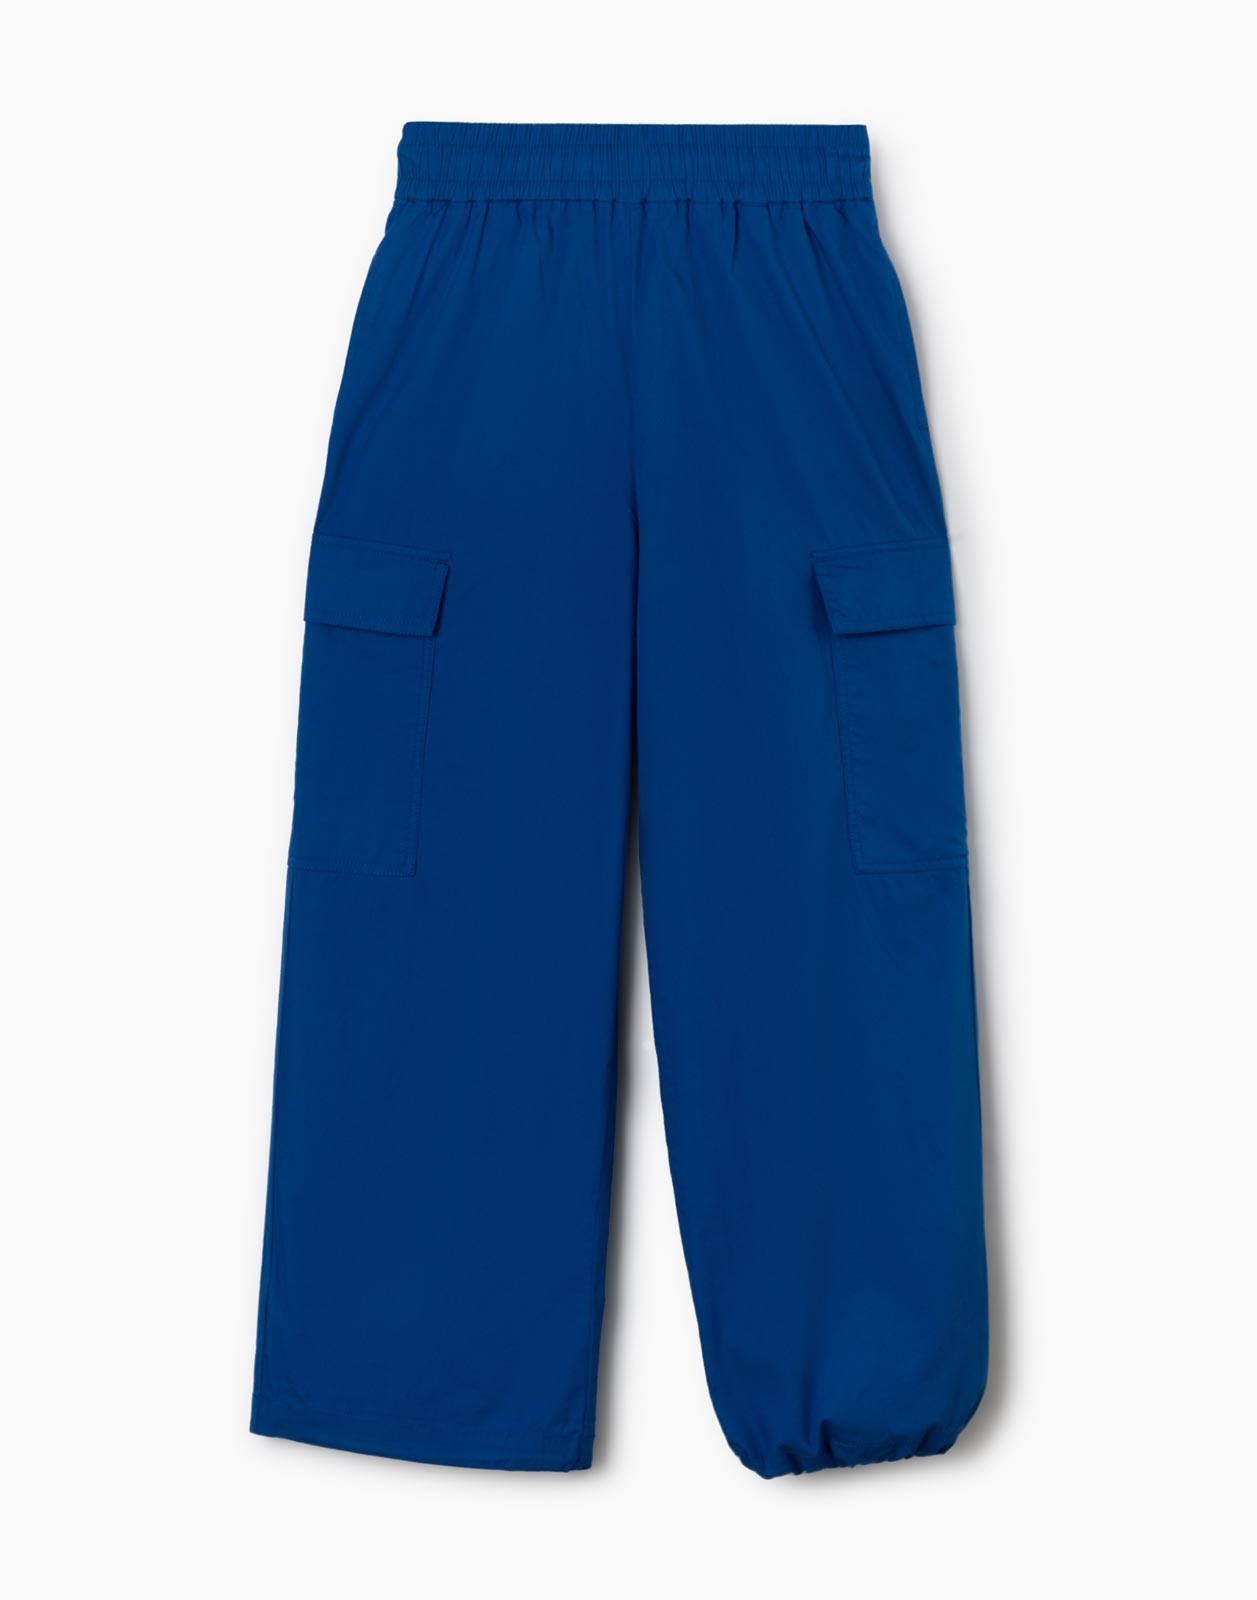 Синие брюки-трансформеры с карманами карго для девочки р.152